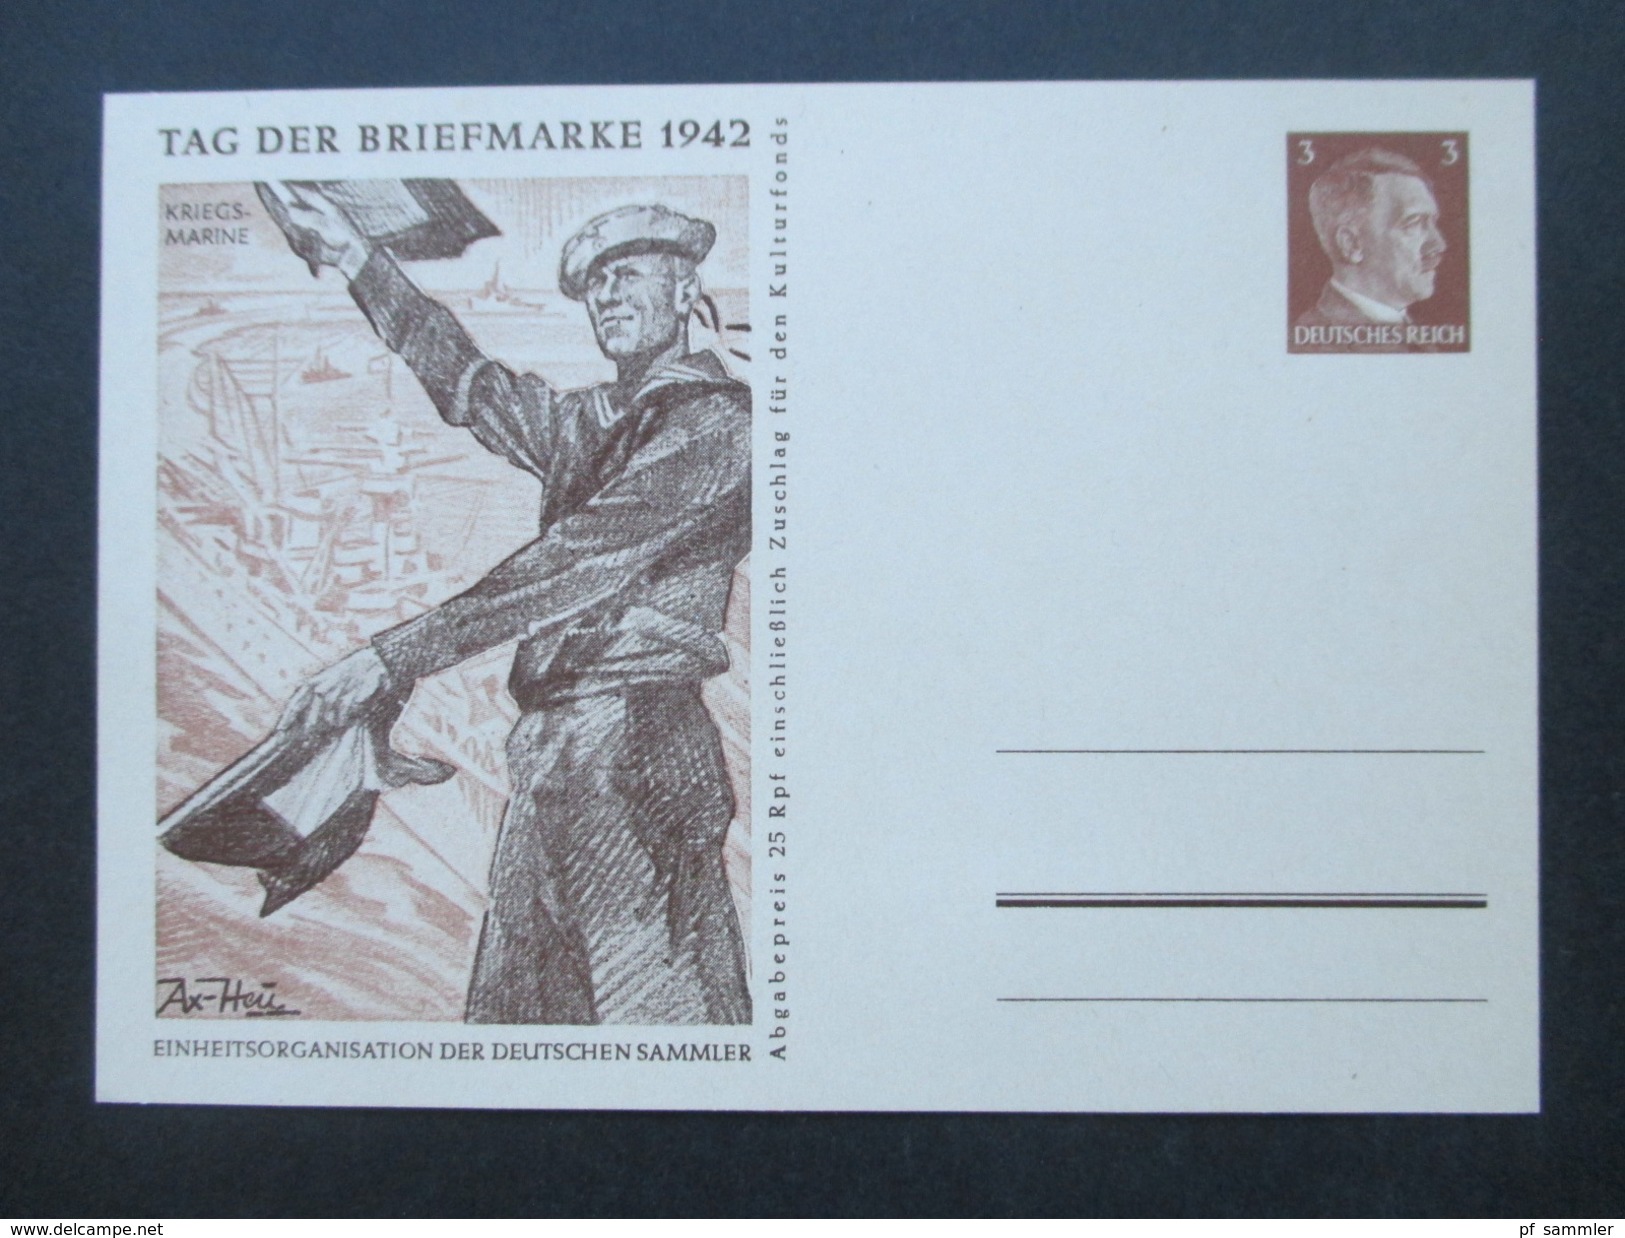 Deutsches Reich Ganzsachen Sammlung 1879 - 1940er Jahre. Sonderkarten / Frage u. Antwort usw. 80 Stk. Hoher Katalogwert!